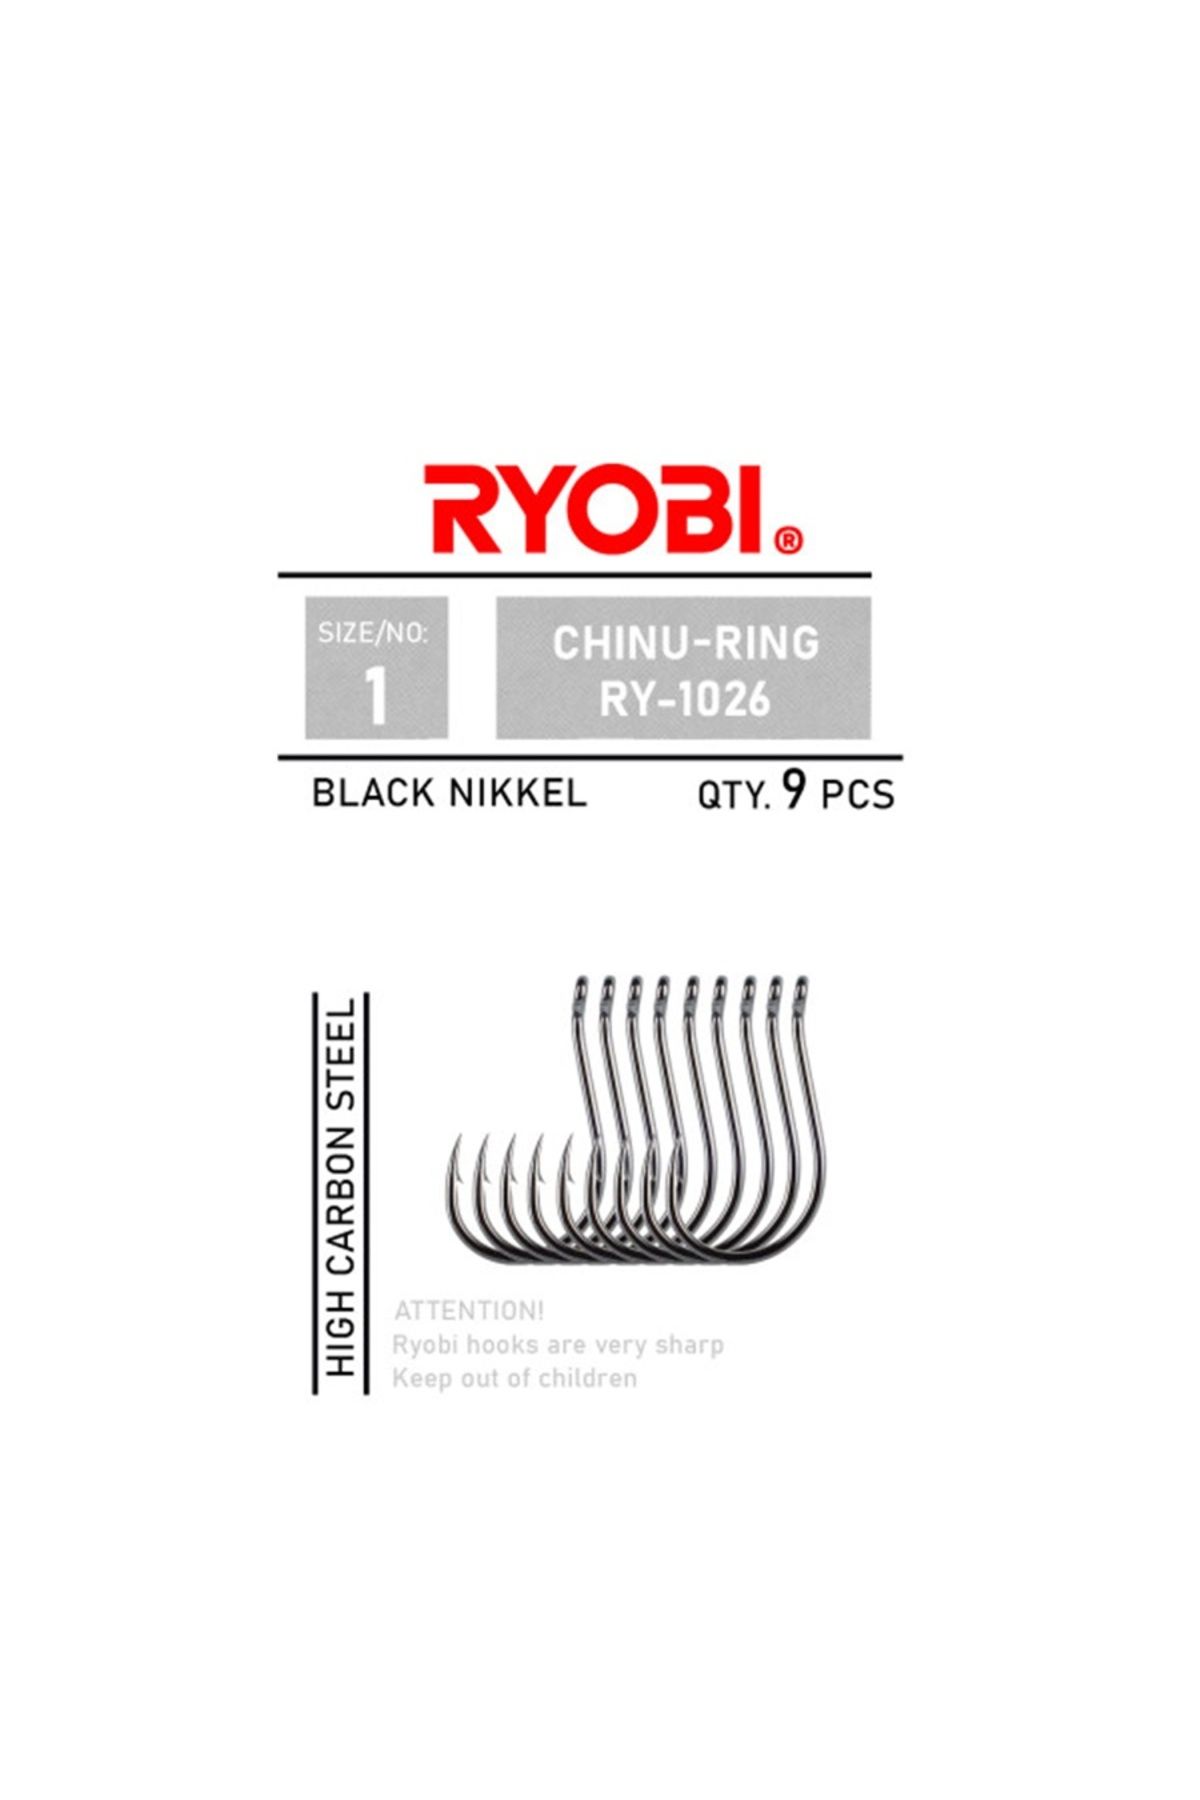 Ryobi Chinu-Ring RY-1026 Black Nickel Olta İğnesi No:3